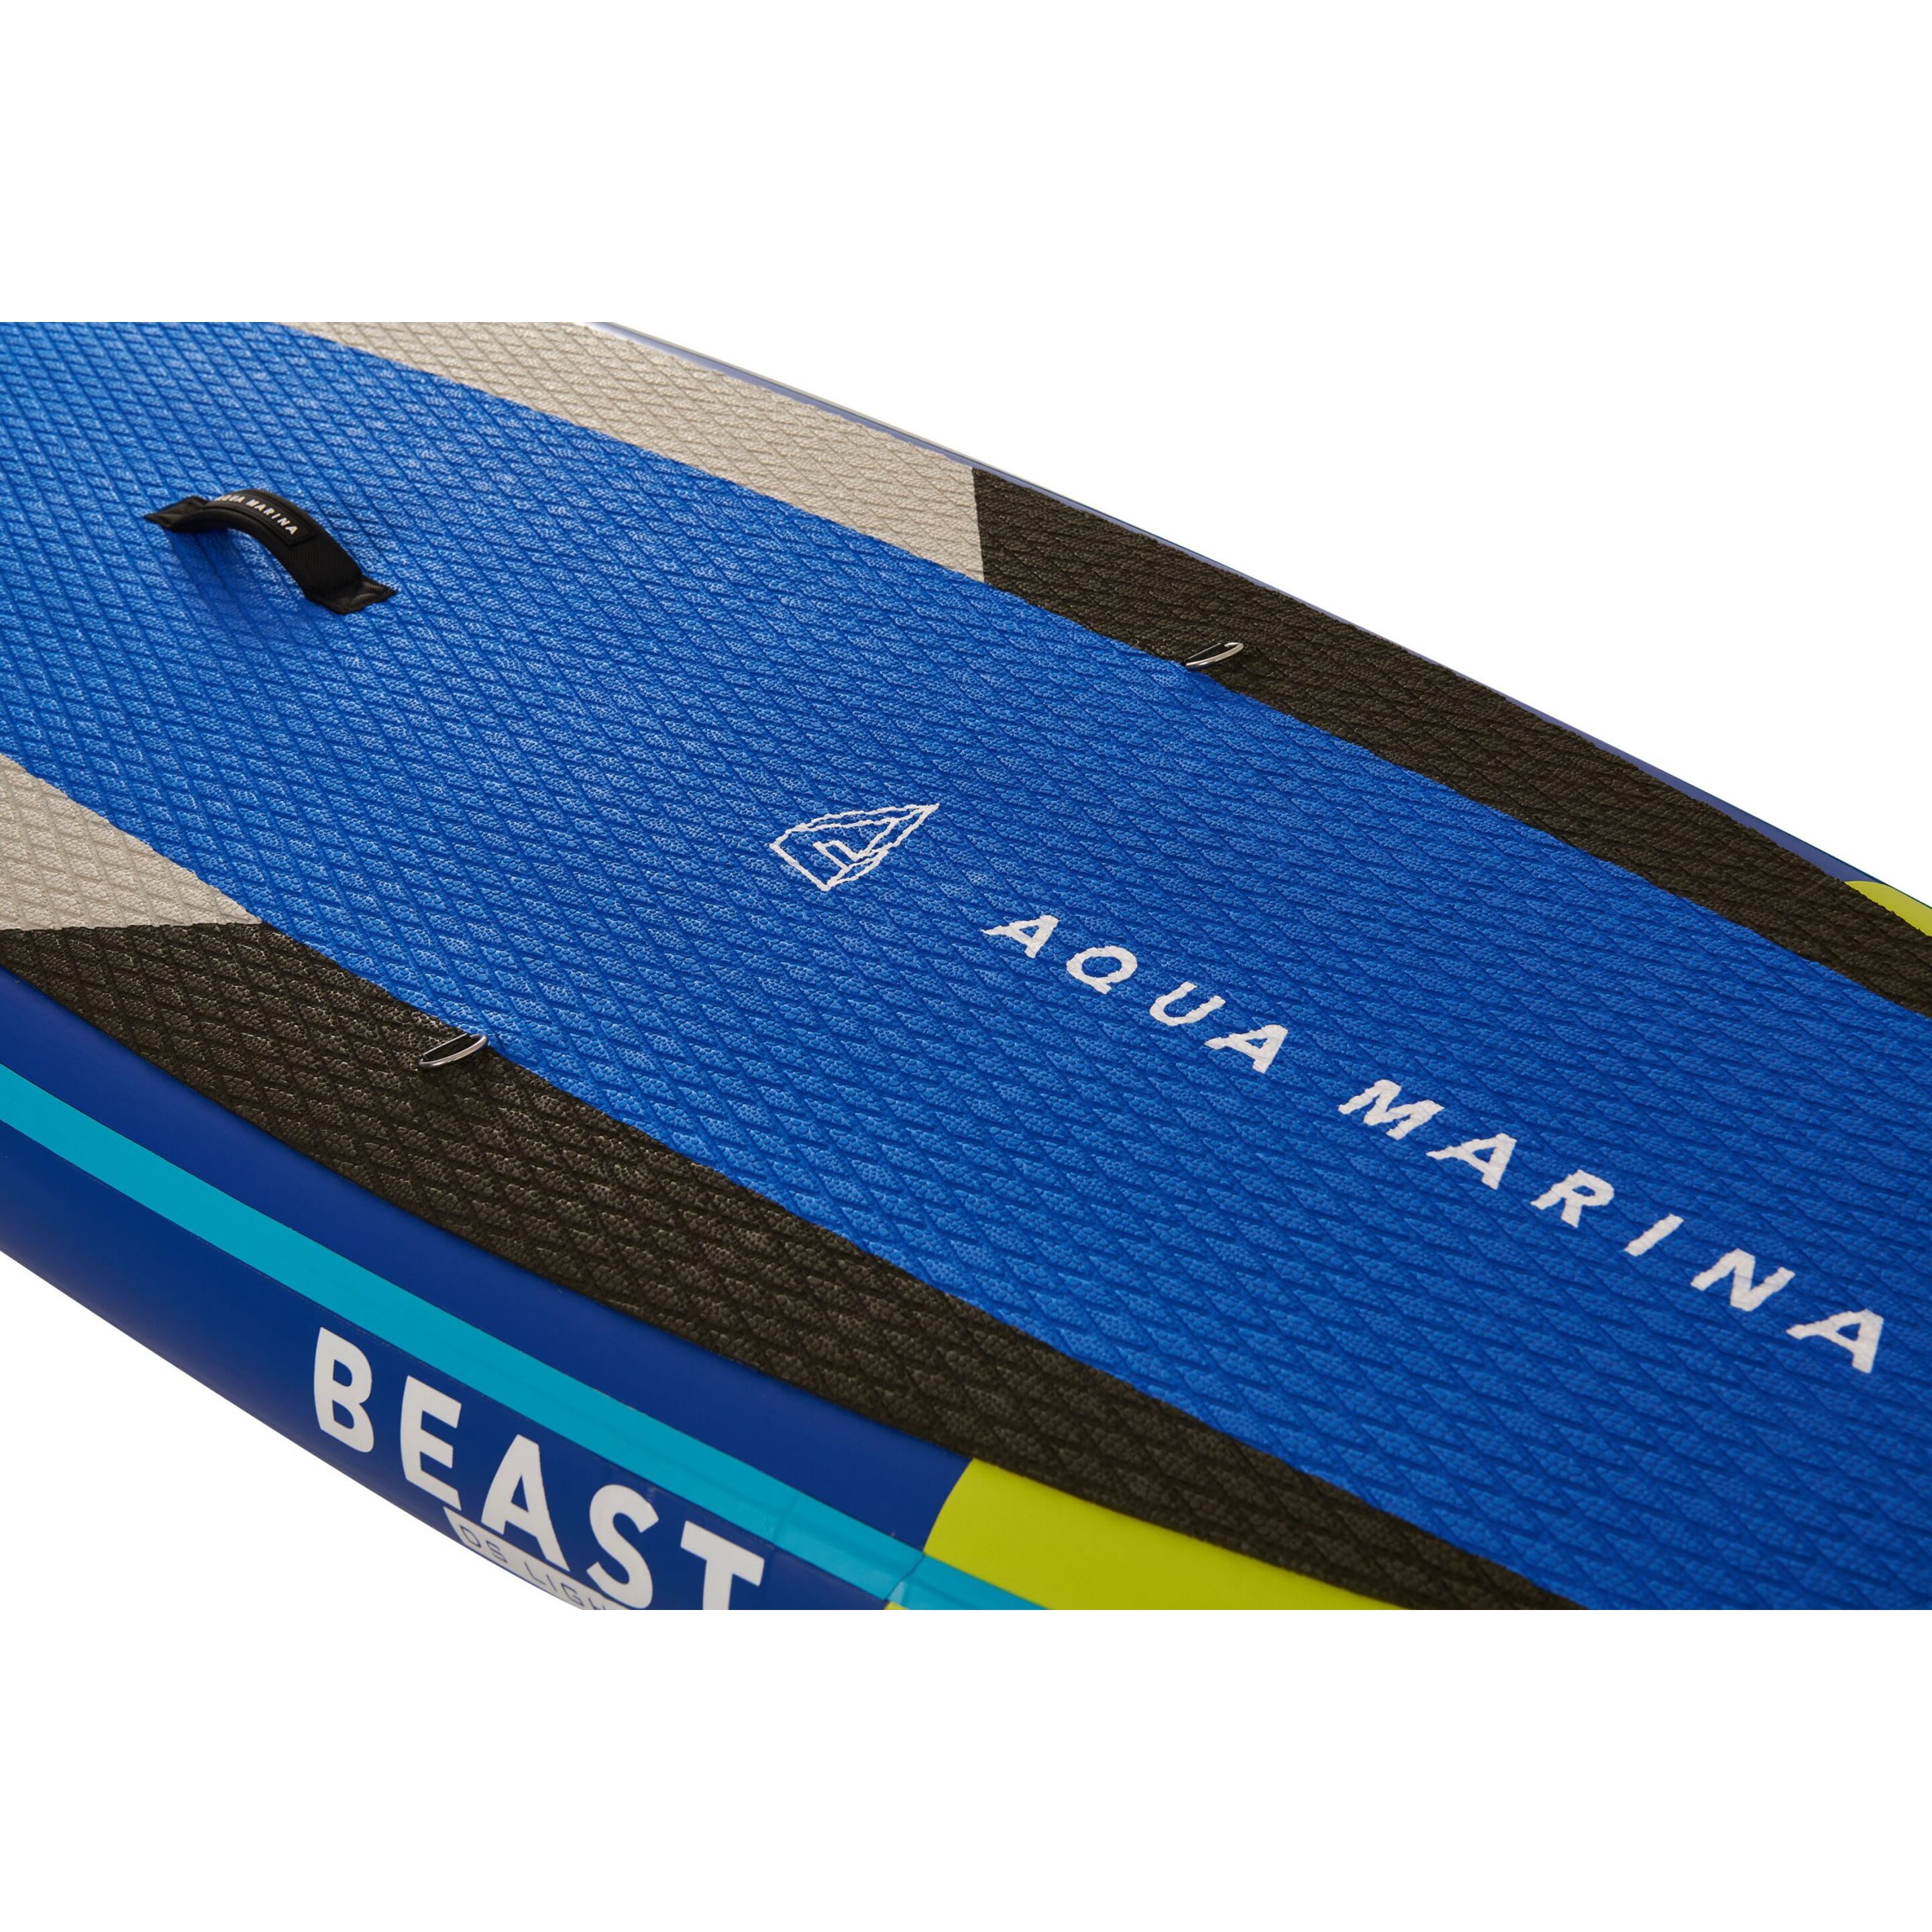 Tabla Paddle Surf Aqua Marina Beast 10’6? - Azul - All-around Advanced Series  MKP